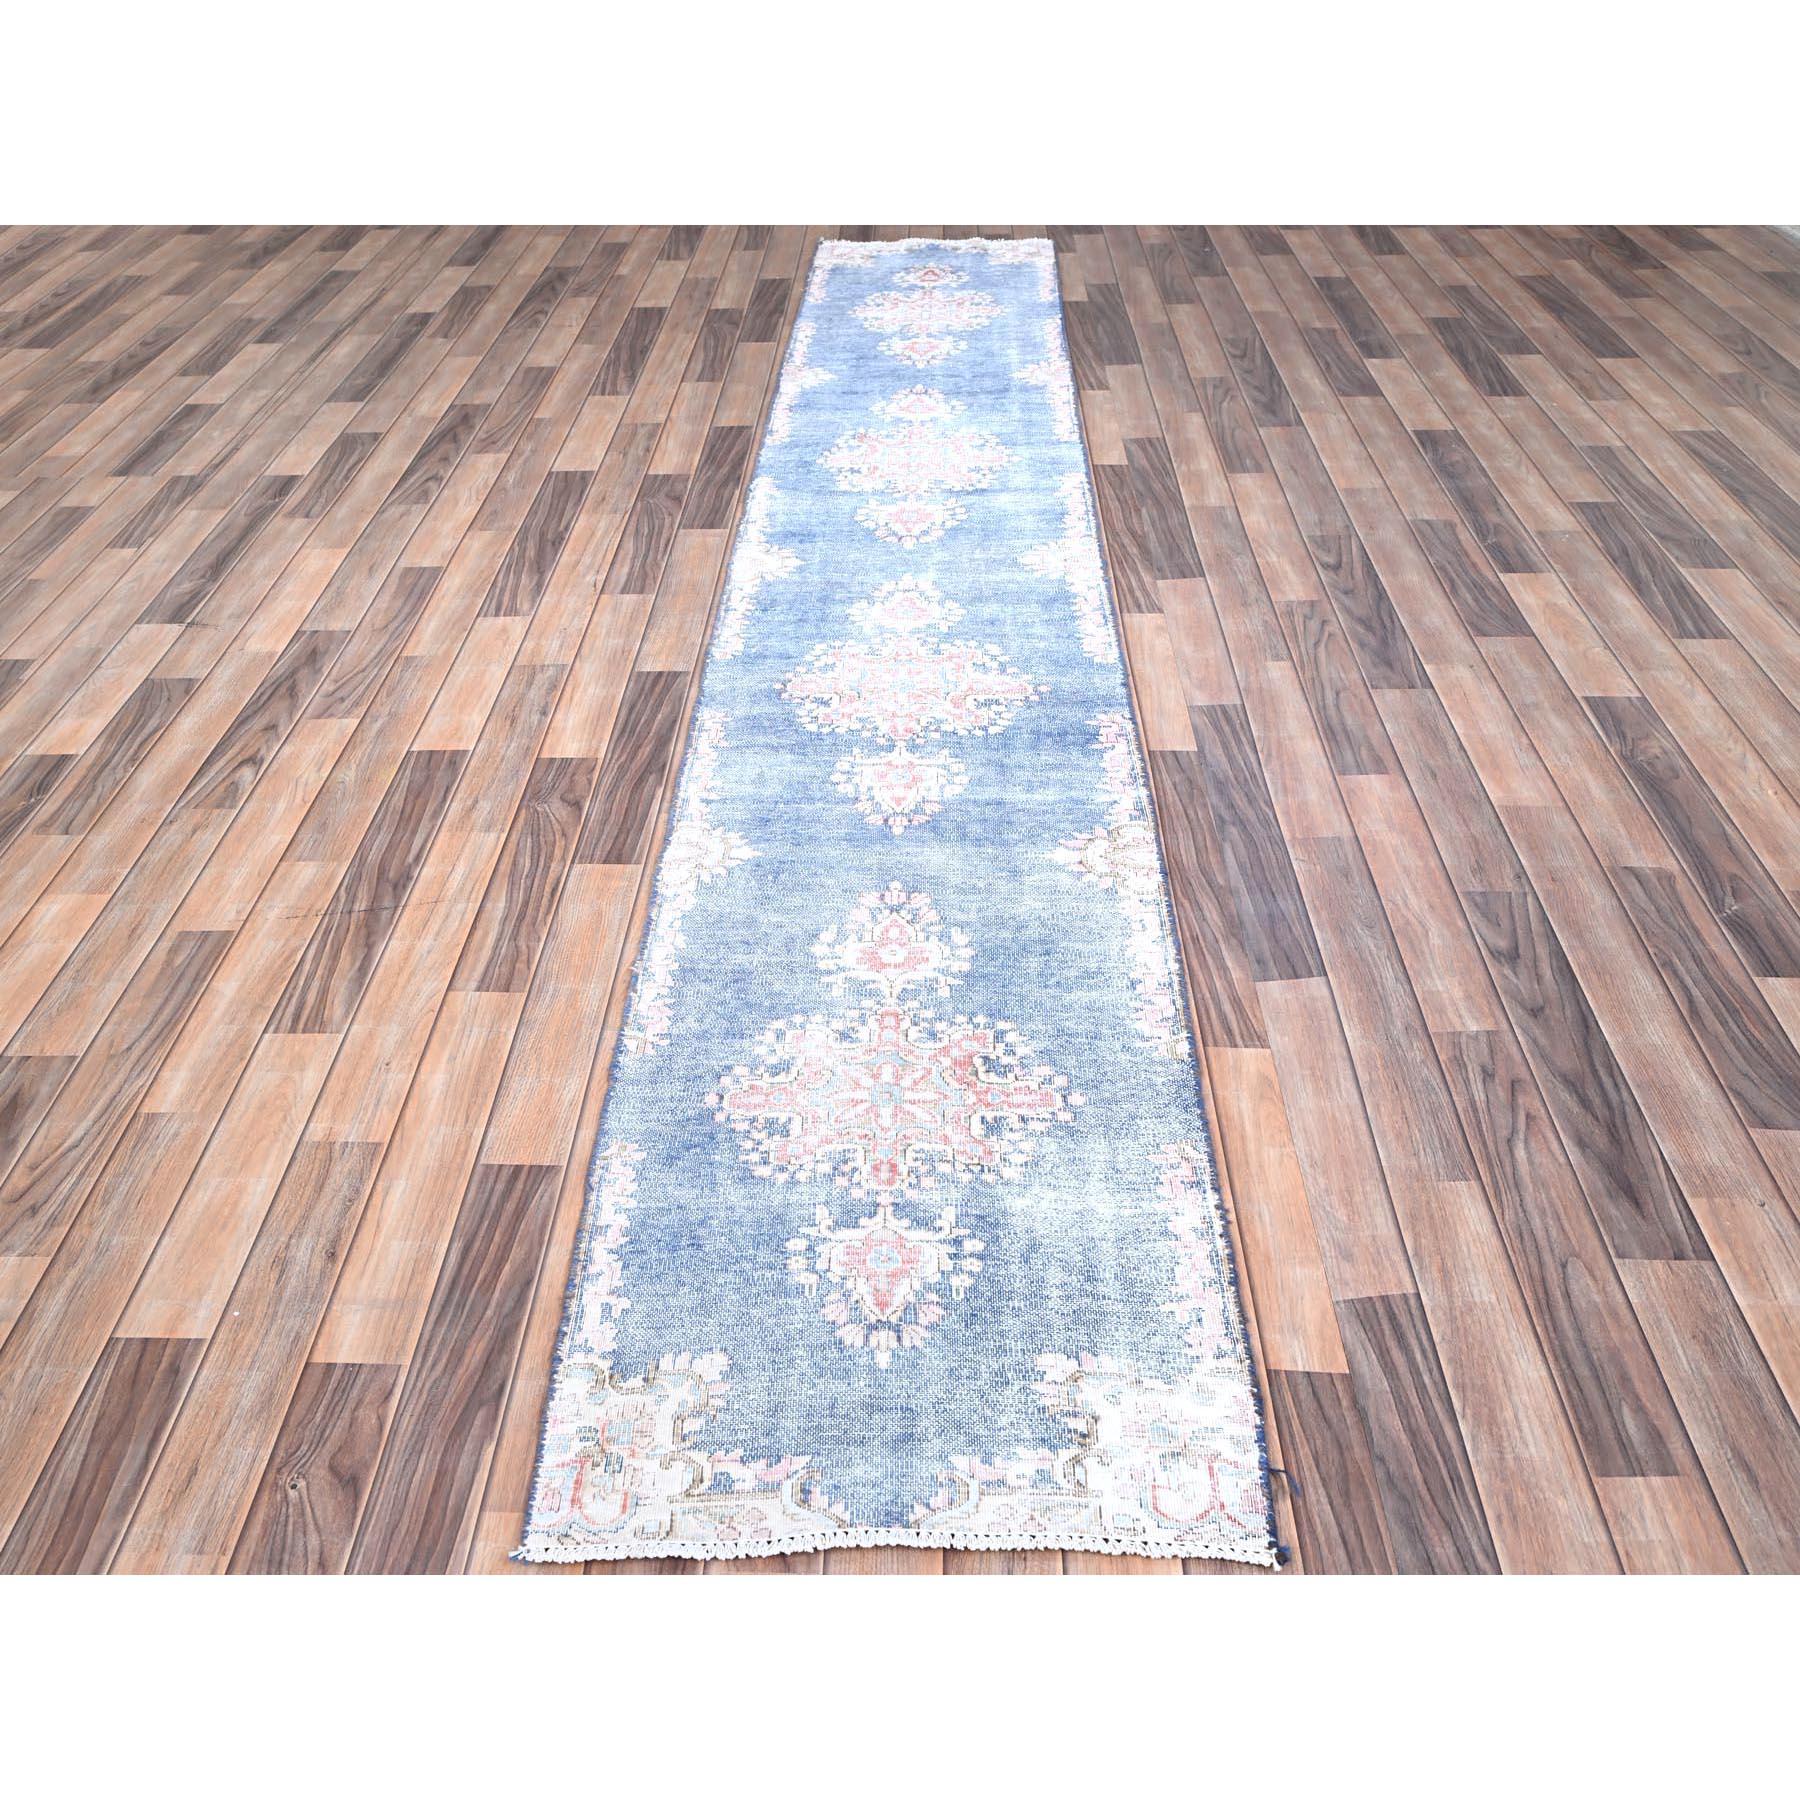 Dieser fabelhafte, handgeknüpfte Teppich wurde für zusätzliche Festigkeit und Haltbarkeit entworfen und hergestellt. Dieser Teppich wurde in wochenlanger Handarbeit nach der traditionellen Methode hergestellt, mit der auch die
Genaue Größe des